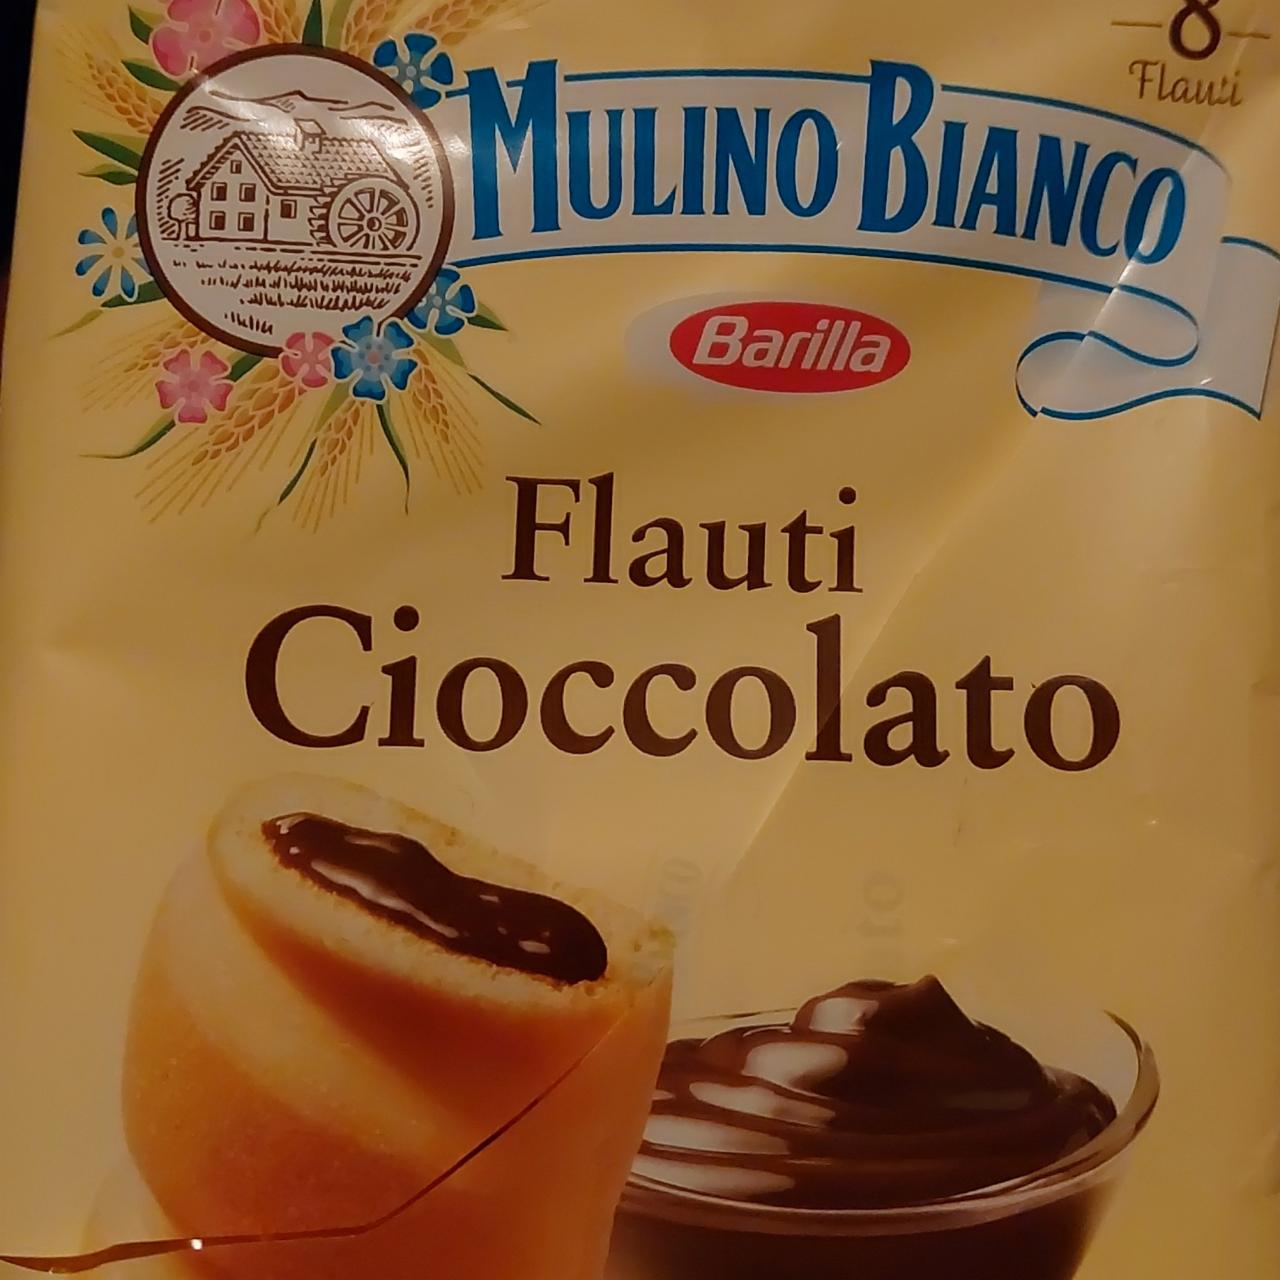 Fotografie - Barilla Mulino Bianco Flauti Cioccolato